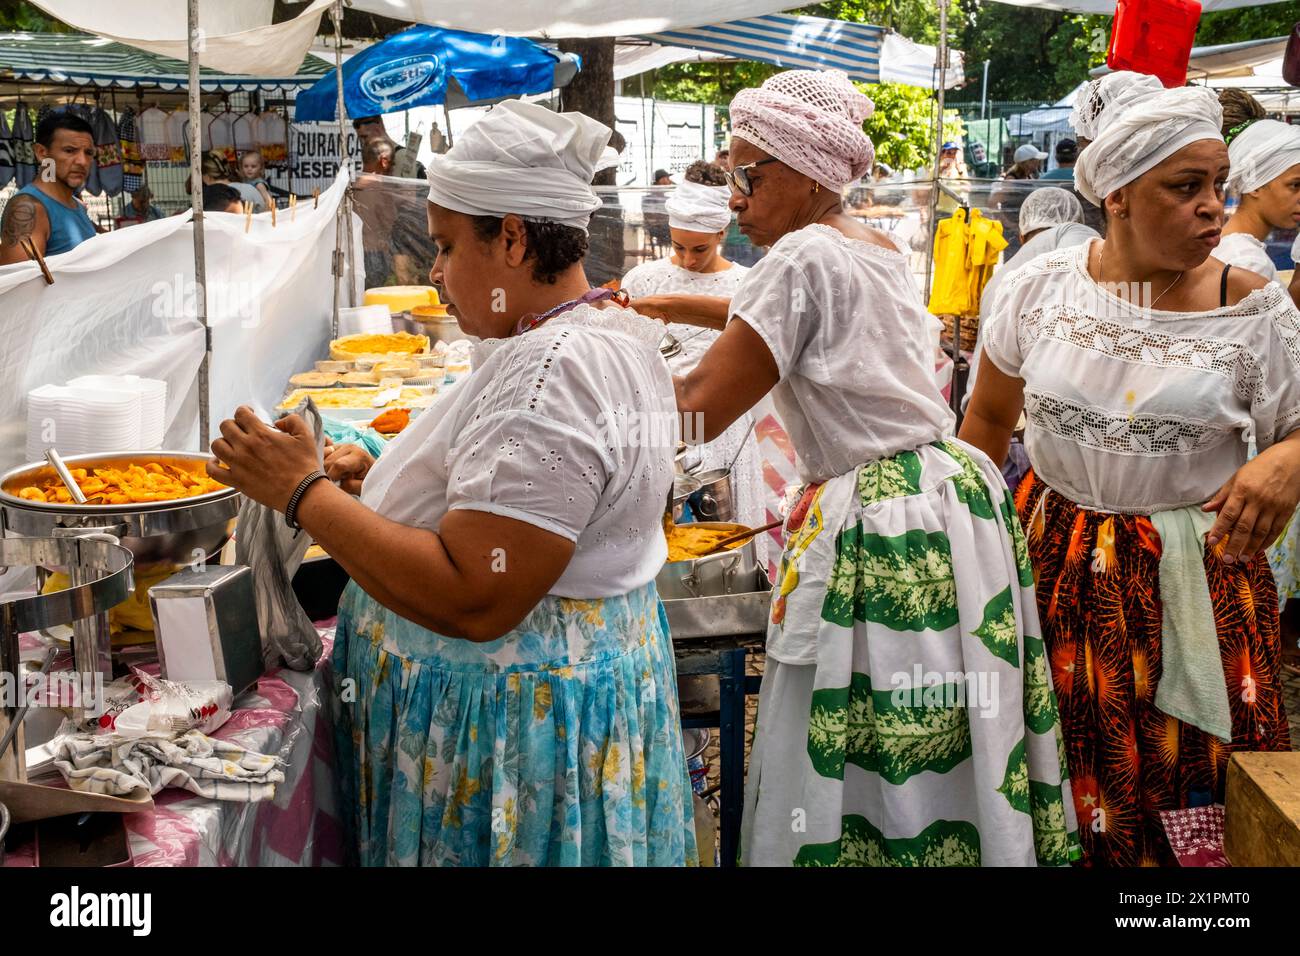 Femmes brésiliennes en costume traditionnel cuisiner et préparer la nourriture dans Un café au marché du dimanche d'Ipanema (foire hippie), Rio de Janeiro, Brésil Banque D'Images